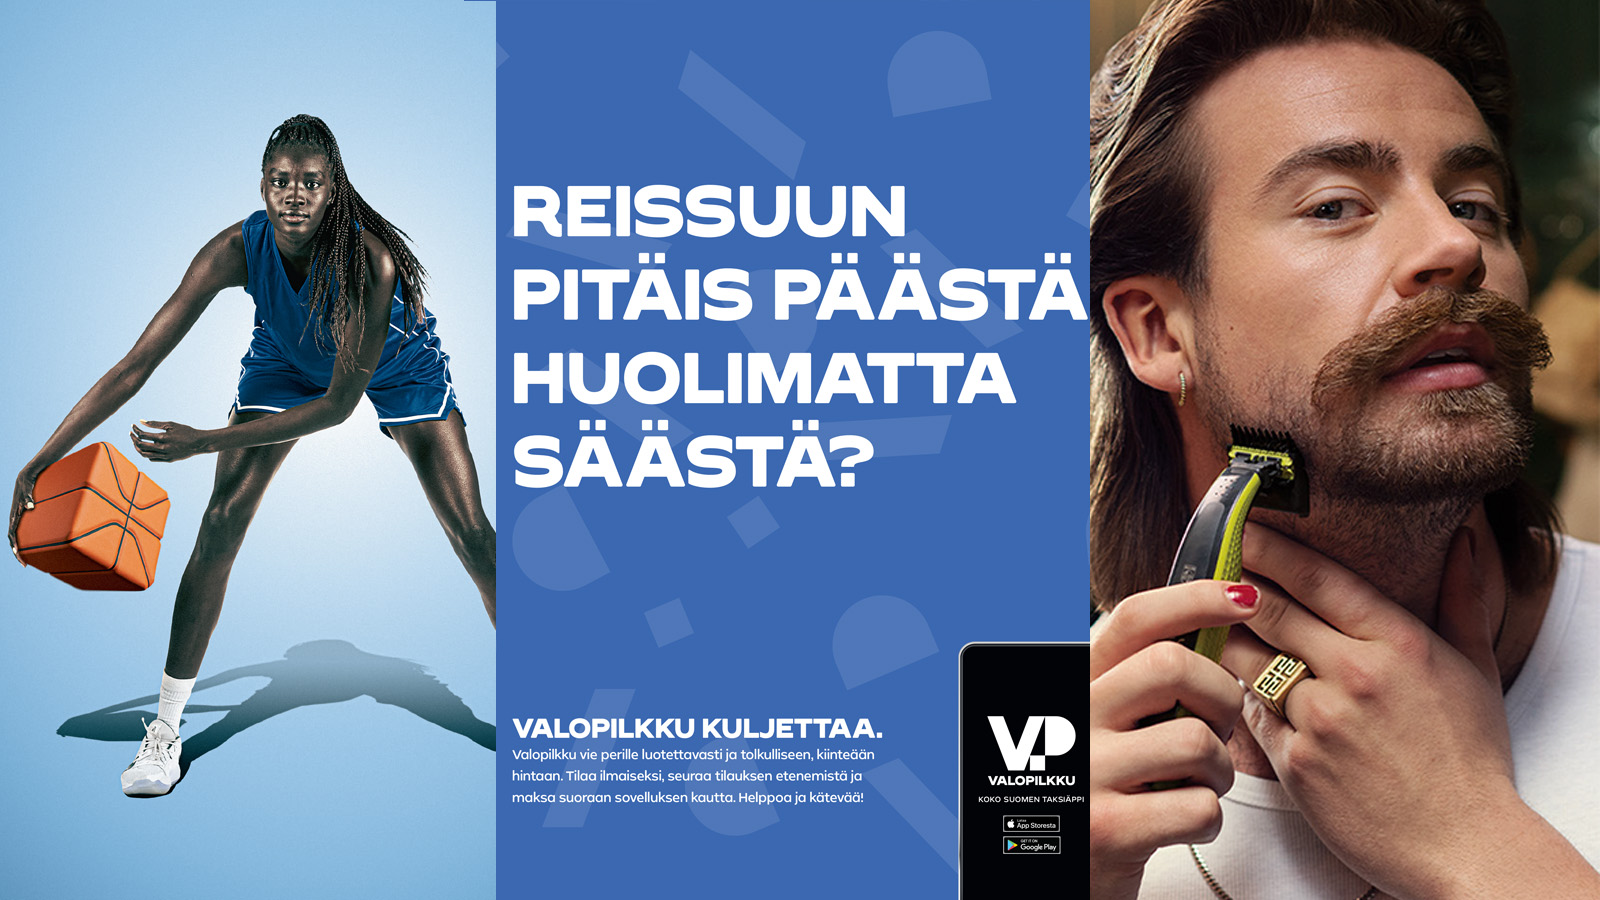 Toukokuun parhaiksi aikkarimainoksiksi valittiin nokkela Ilmarinen, tekstillä leikittelevä Valopilkku sekä karvarauhaa julistava Philips.